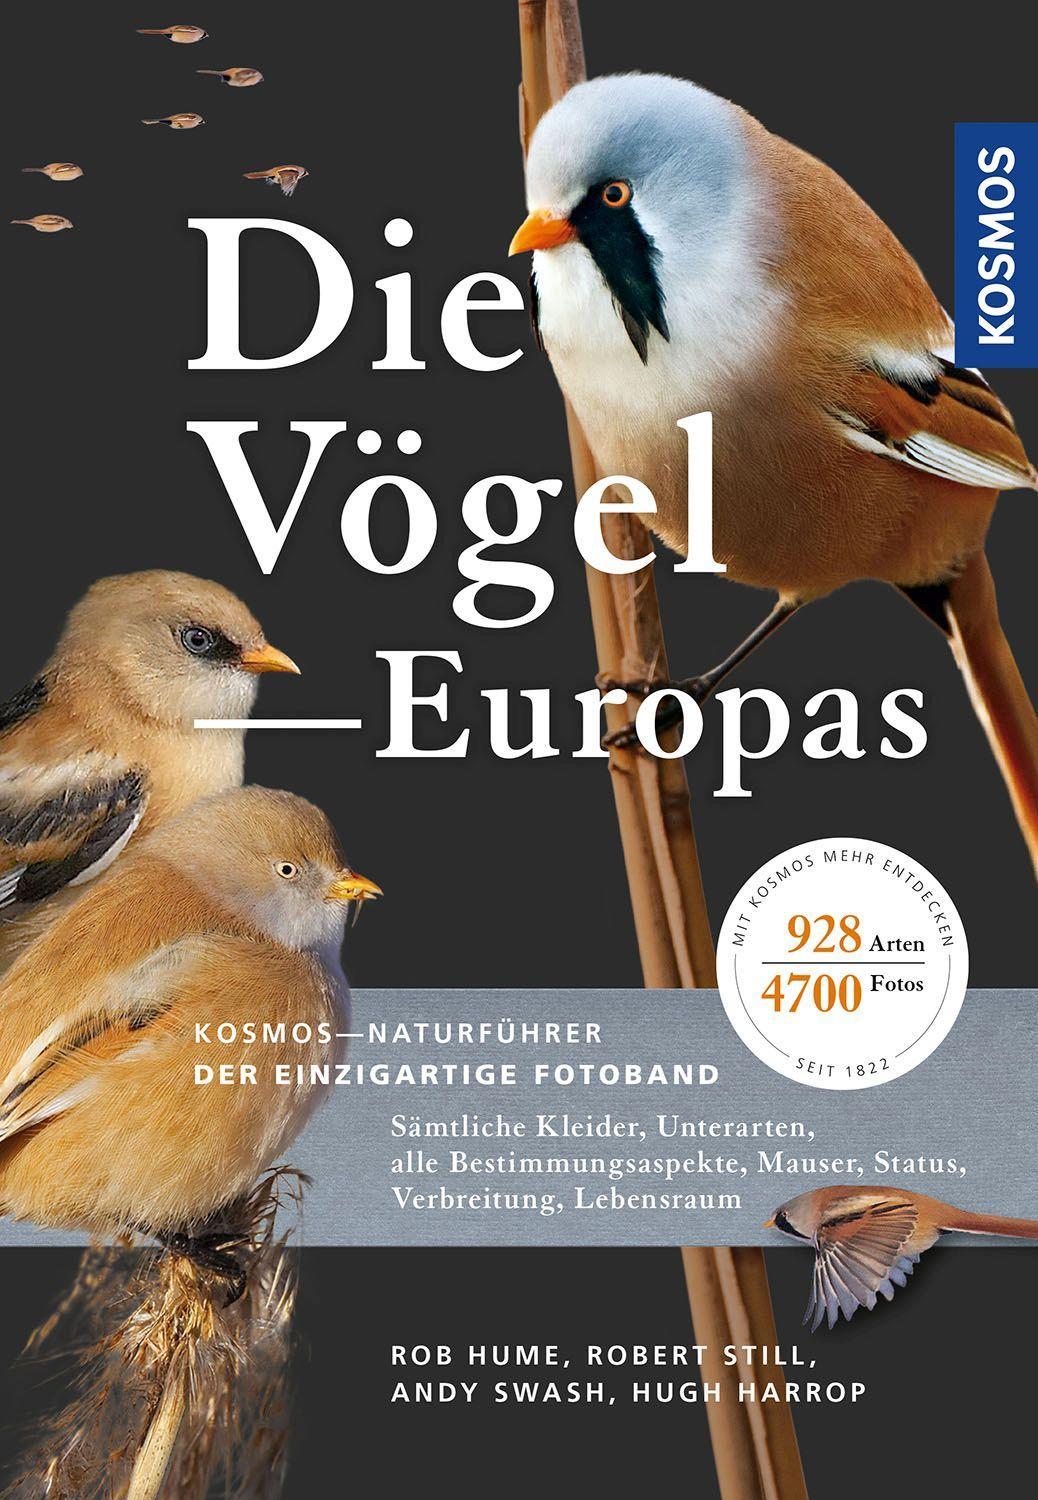 Die Vögel Europas Sämtliche Kleider, Unterarten, alle Bestimmungsaspekte, Mauser, Status, Verbreitung, Lebensraum